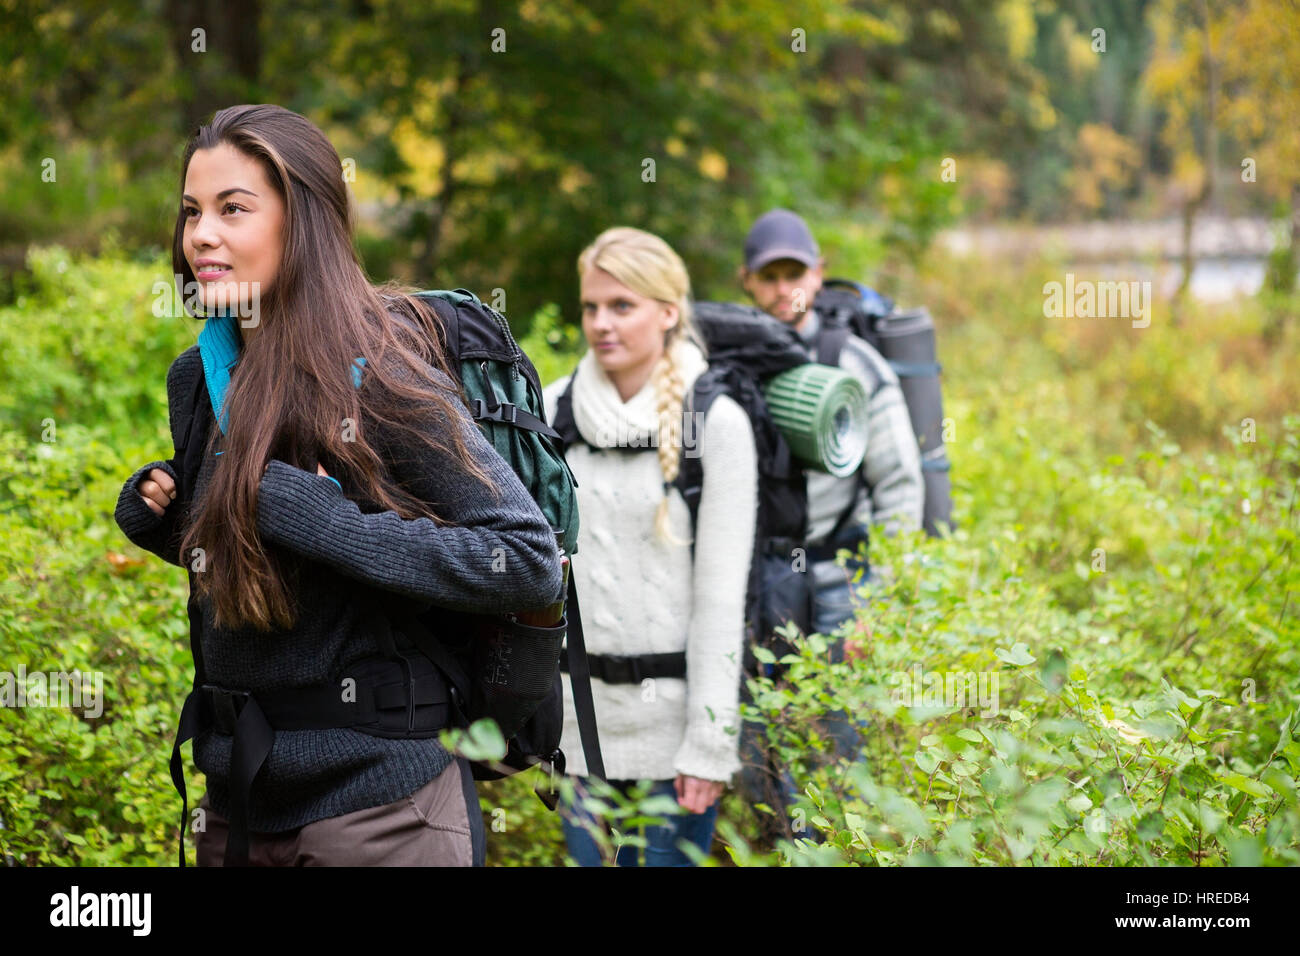 Belle jeune femme avec des amis au milieu de la marche en forêt plantes Banque D'Images